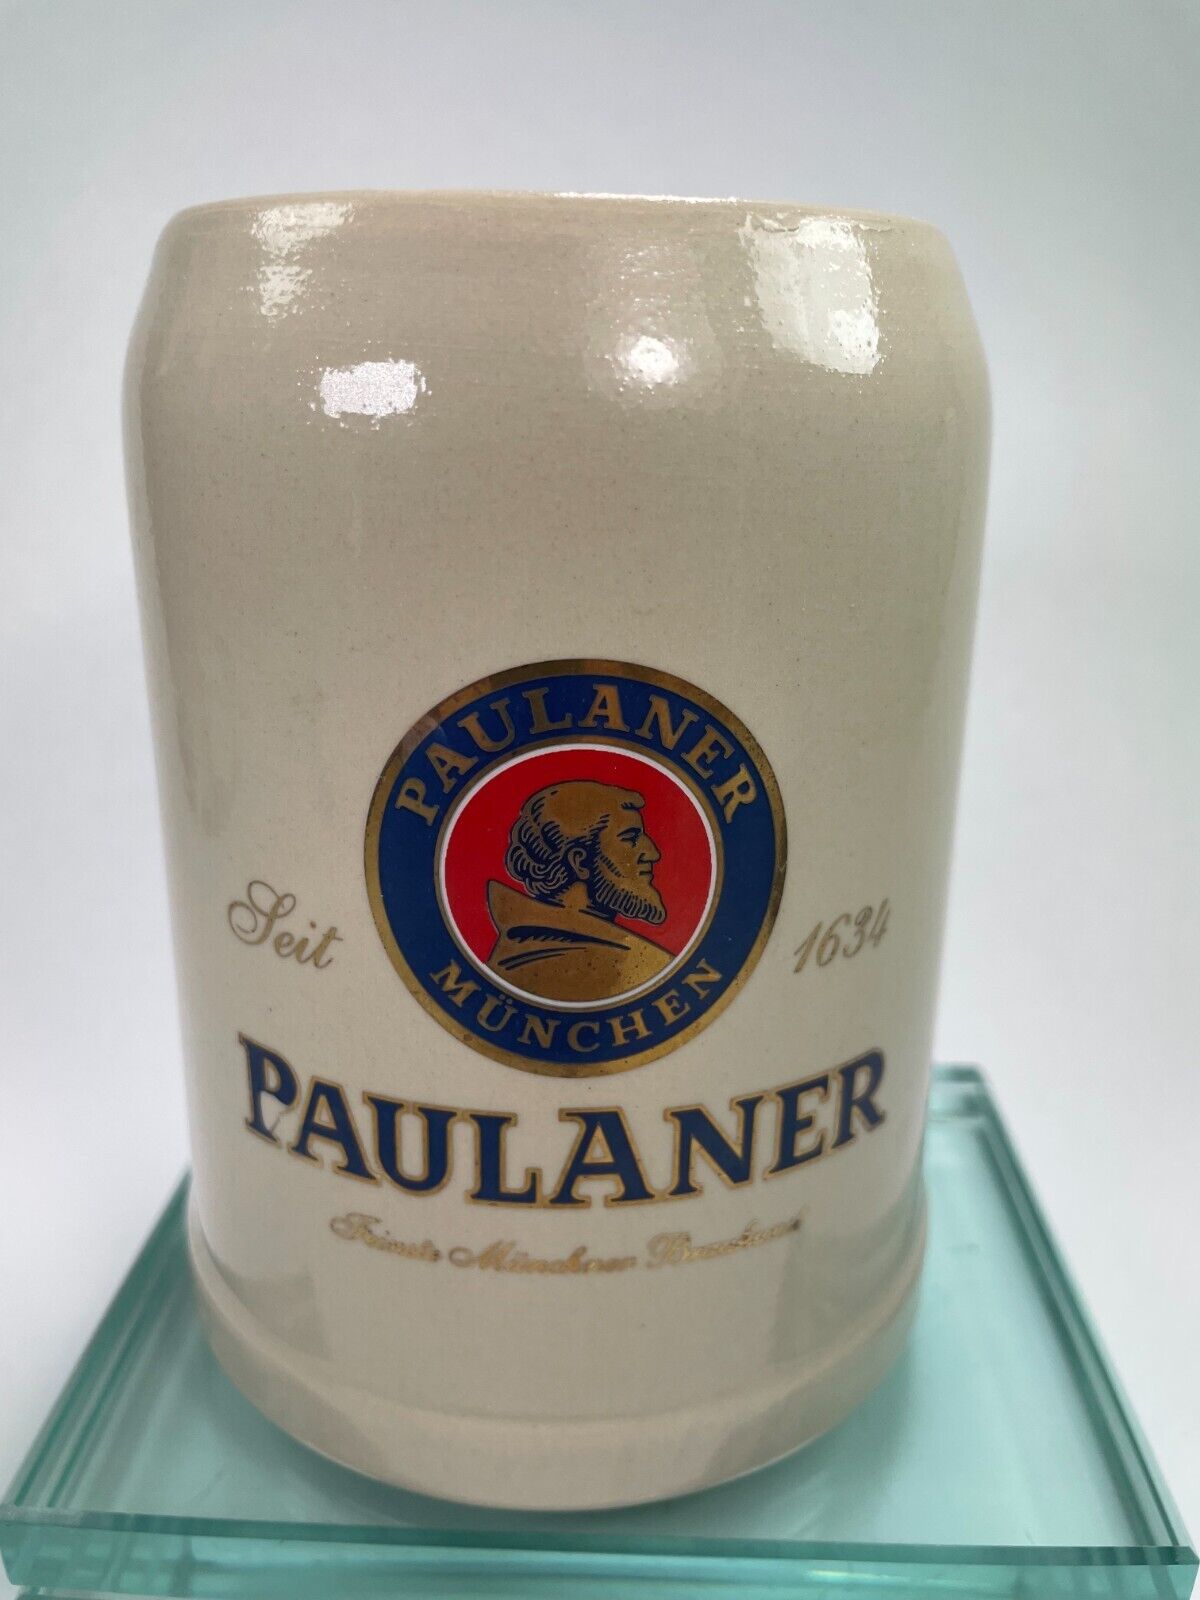 Paulaner Munchen Beer Stein Mug .5 Liter Feit German Vintage Souvenir Cup C55